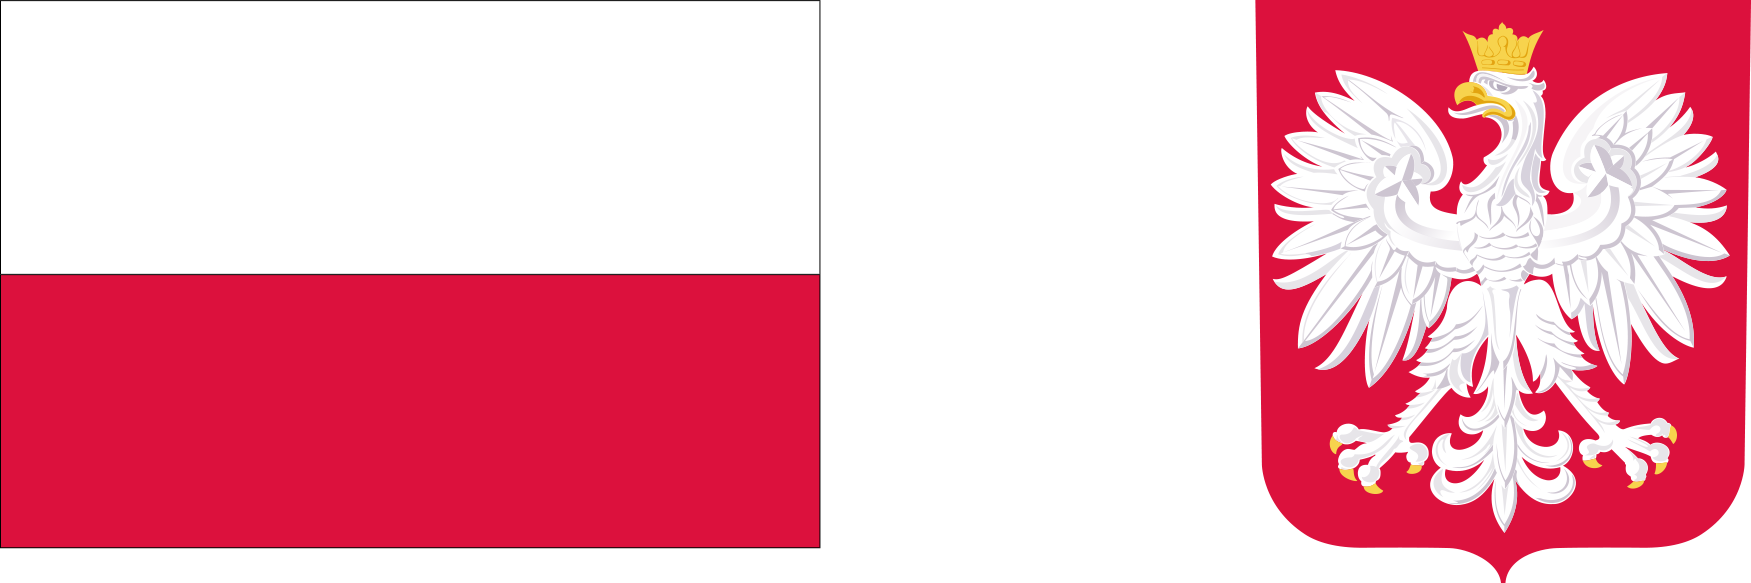 obrazek przedstawia flagę Rzeczpospolitej Polskiej oraz godło Rzeczpospolitej Polskiej 